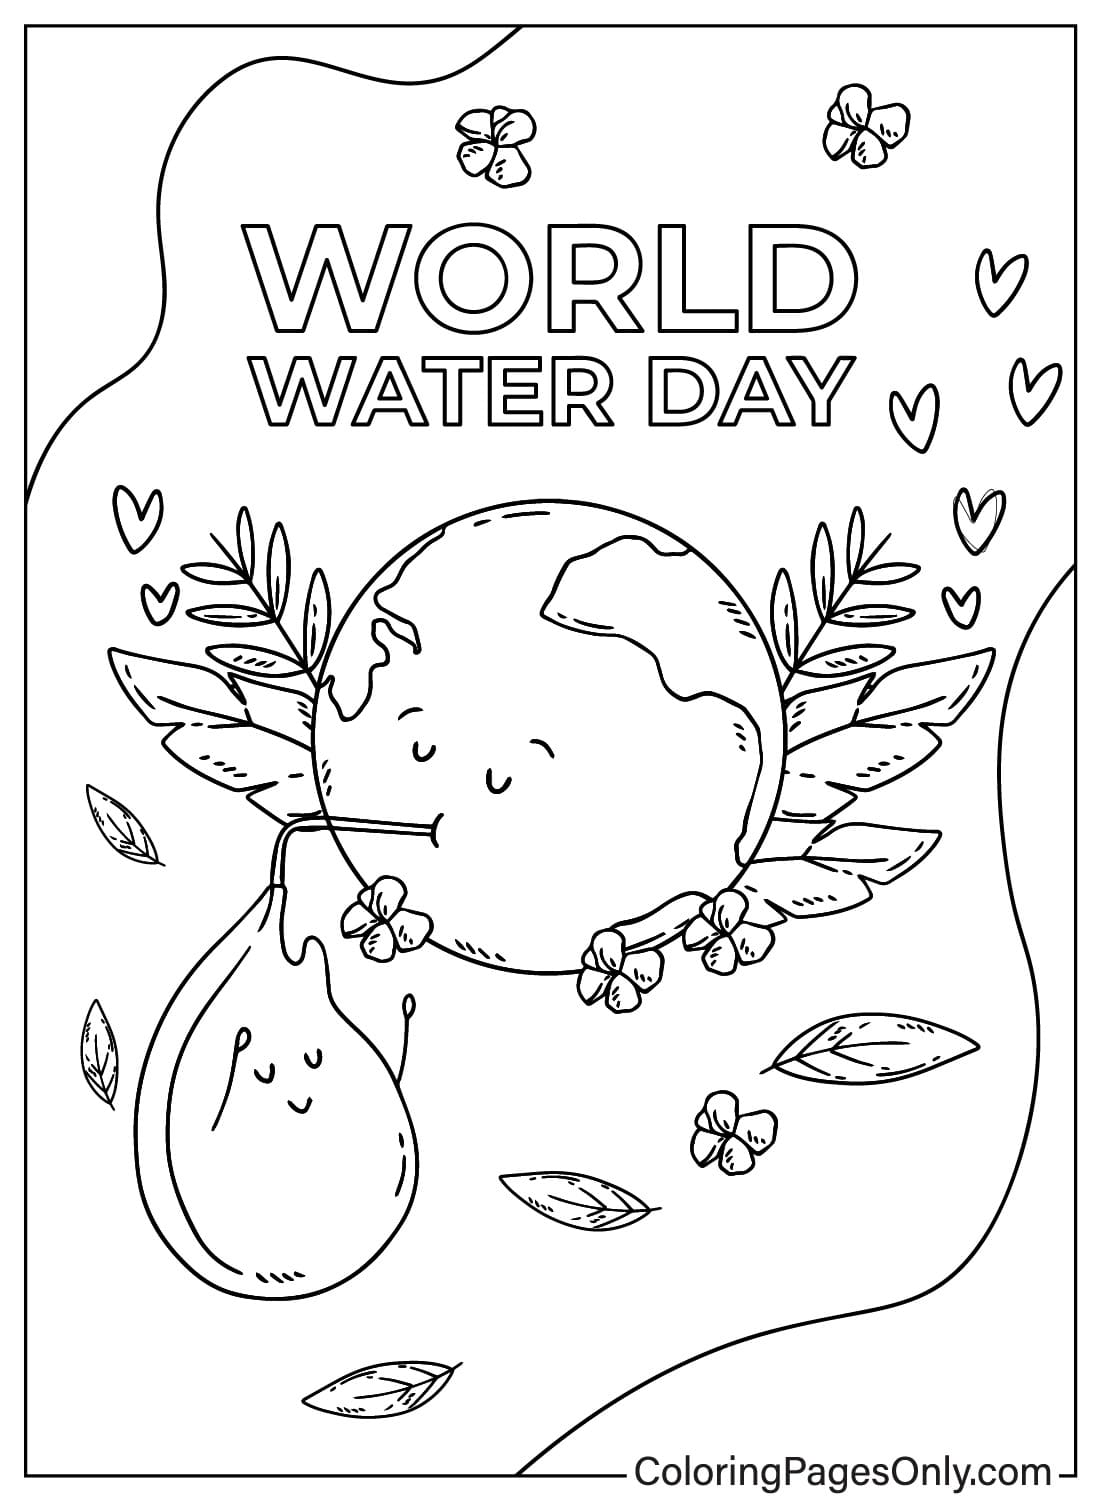 Раскраска ко Всемирному дню воды и Земли от Всемирного дня воды